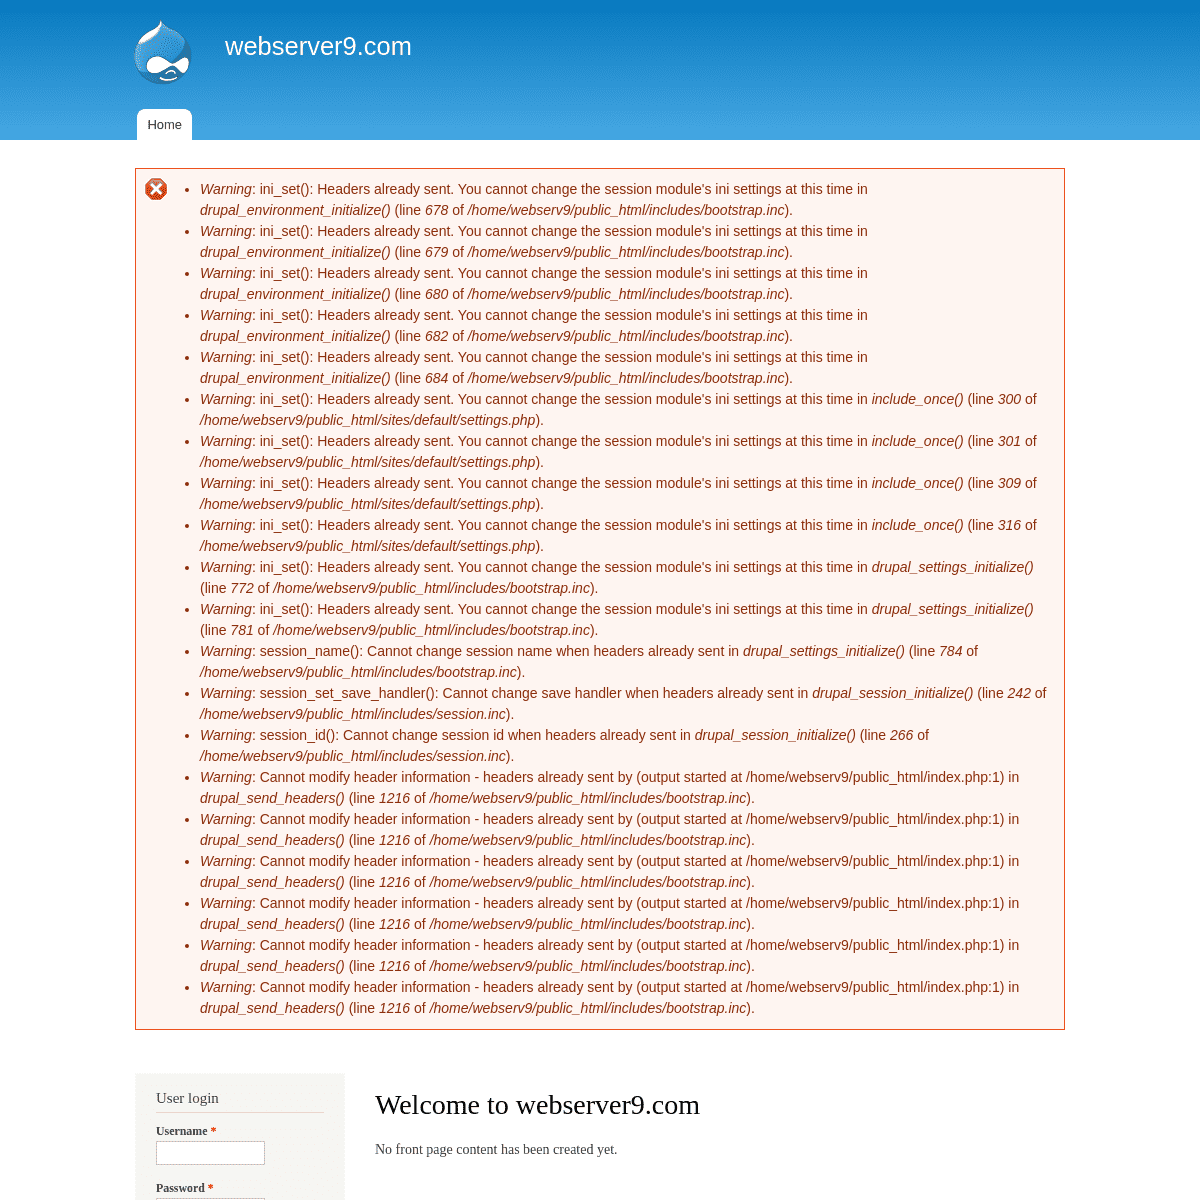 A complete backup of https://webserver9.com